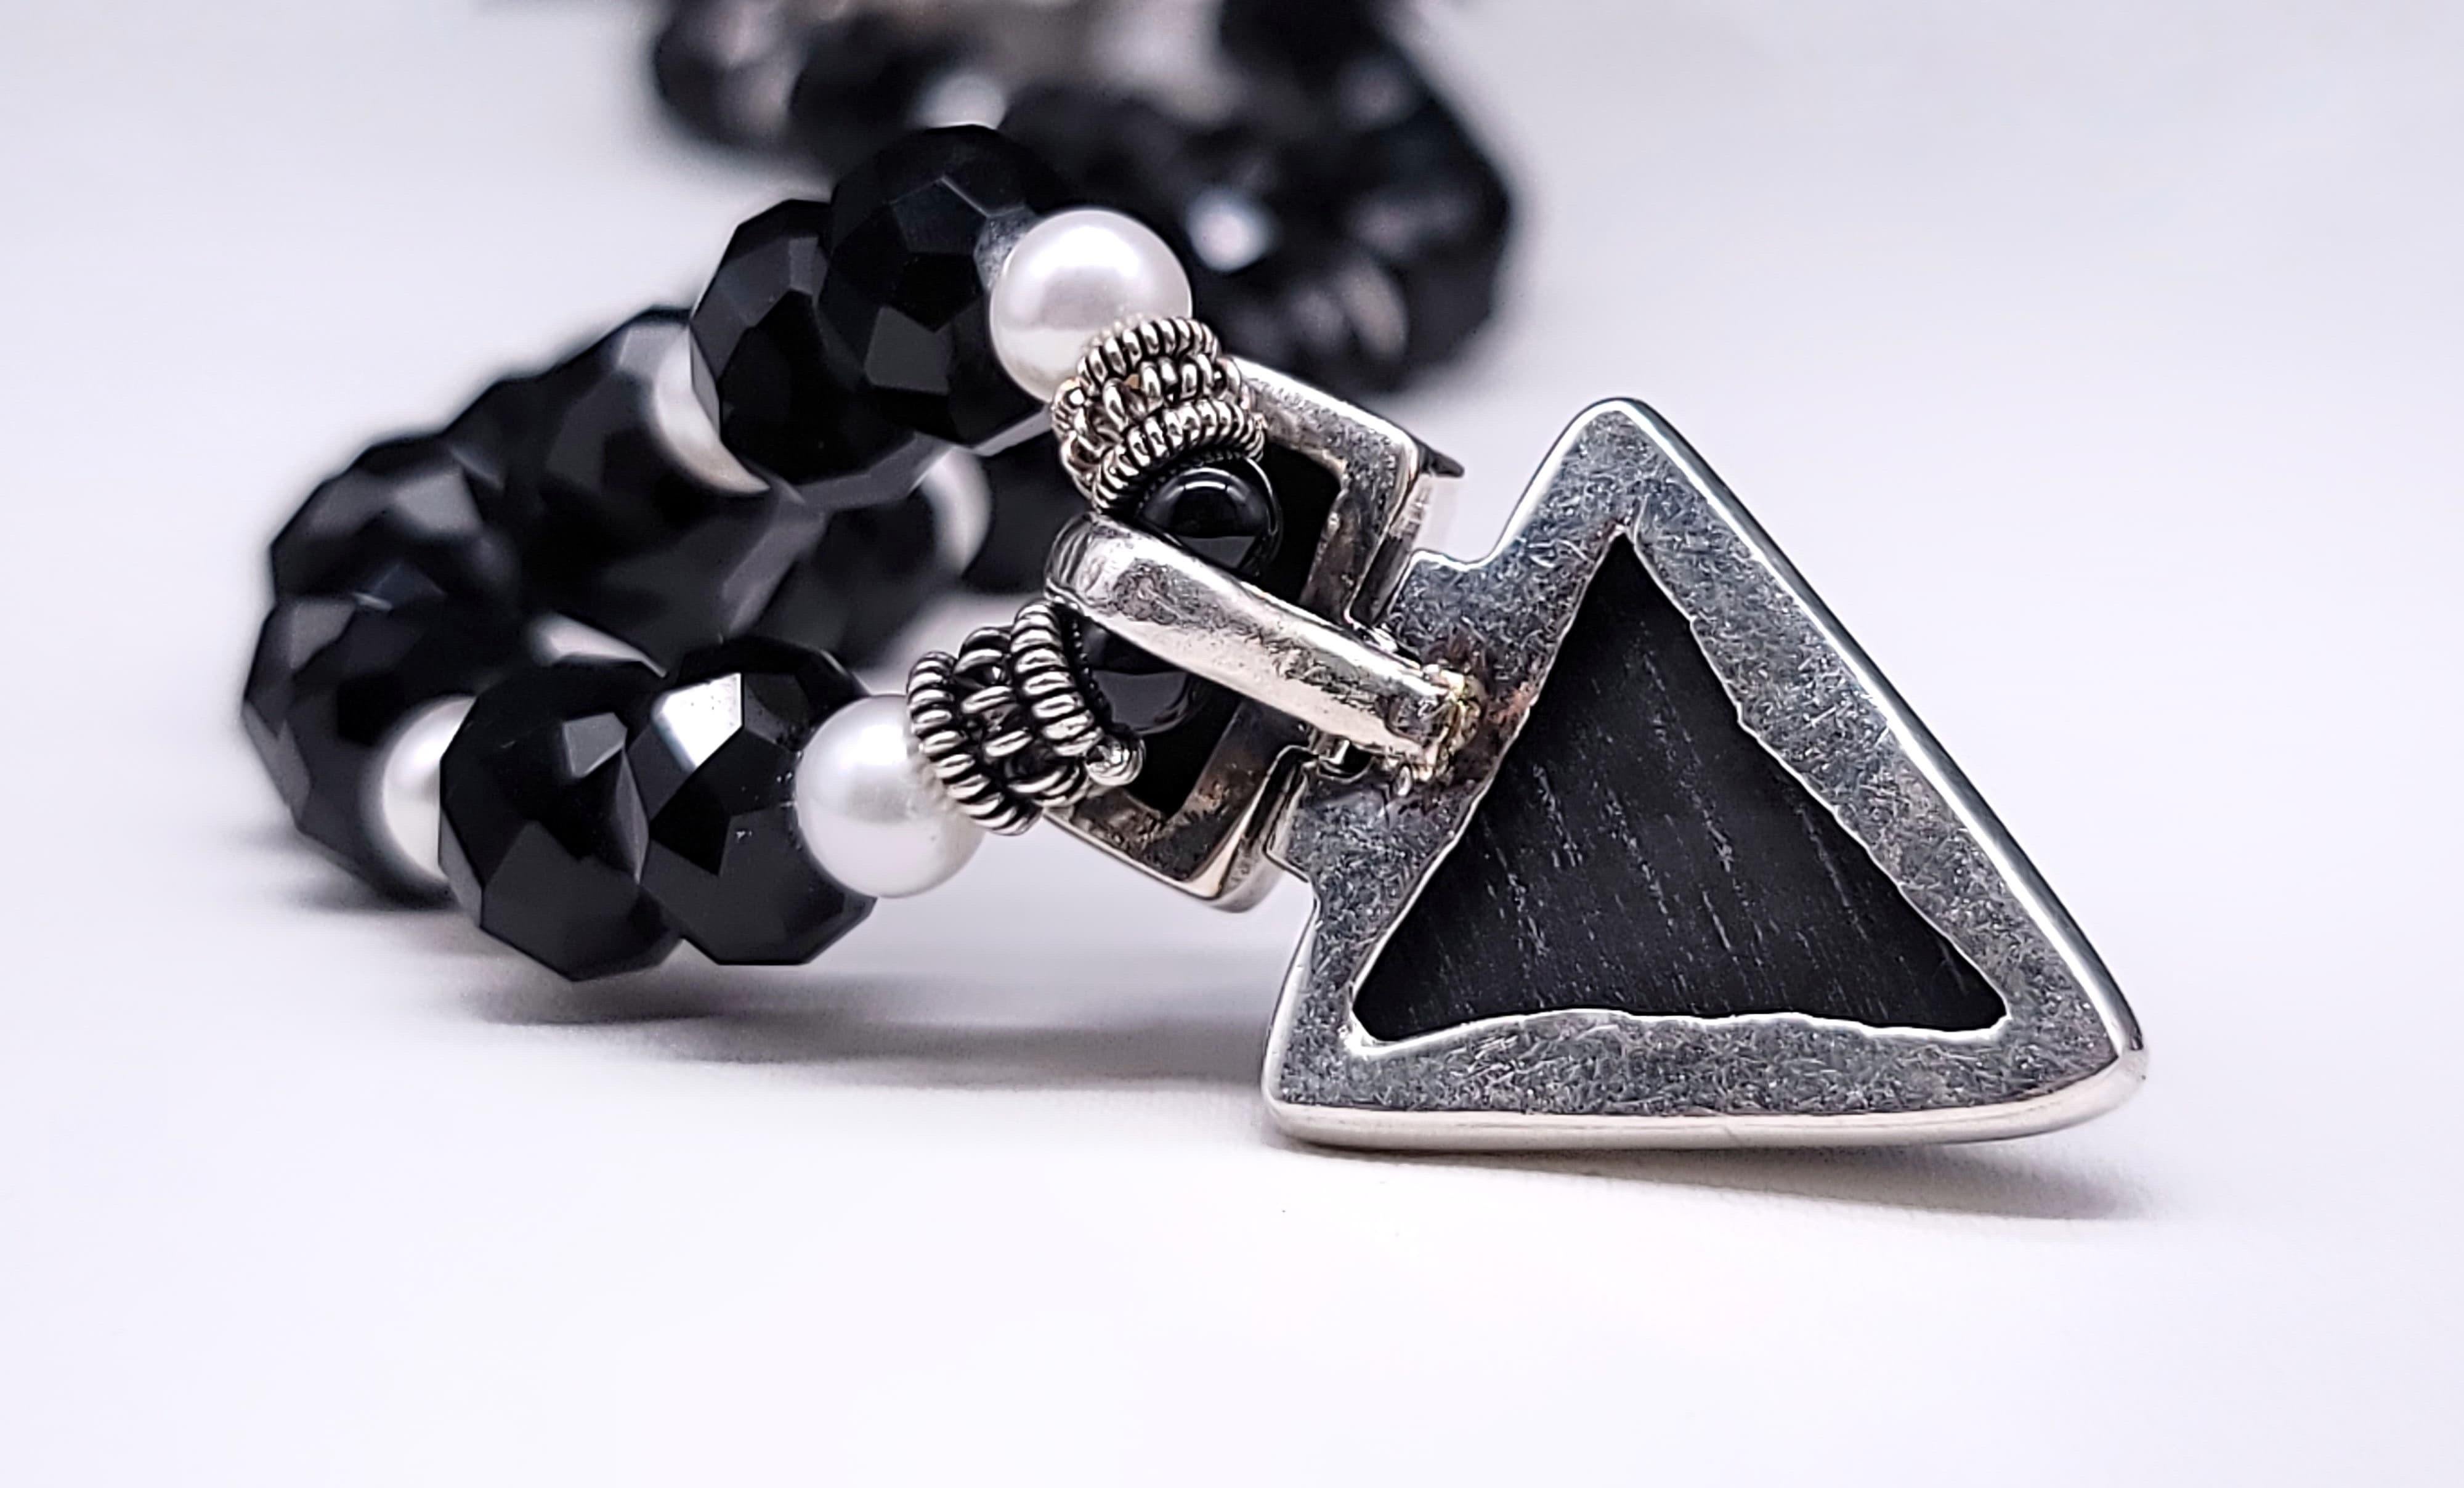 Mixed Cut A.Jeschel Versatile and elegant Onyx pendant necklace.